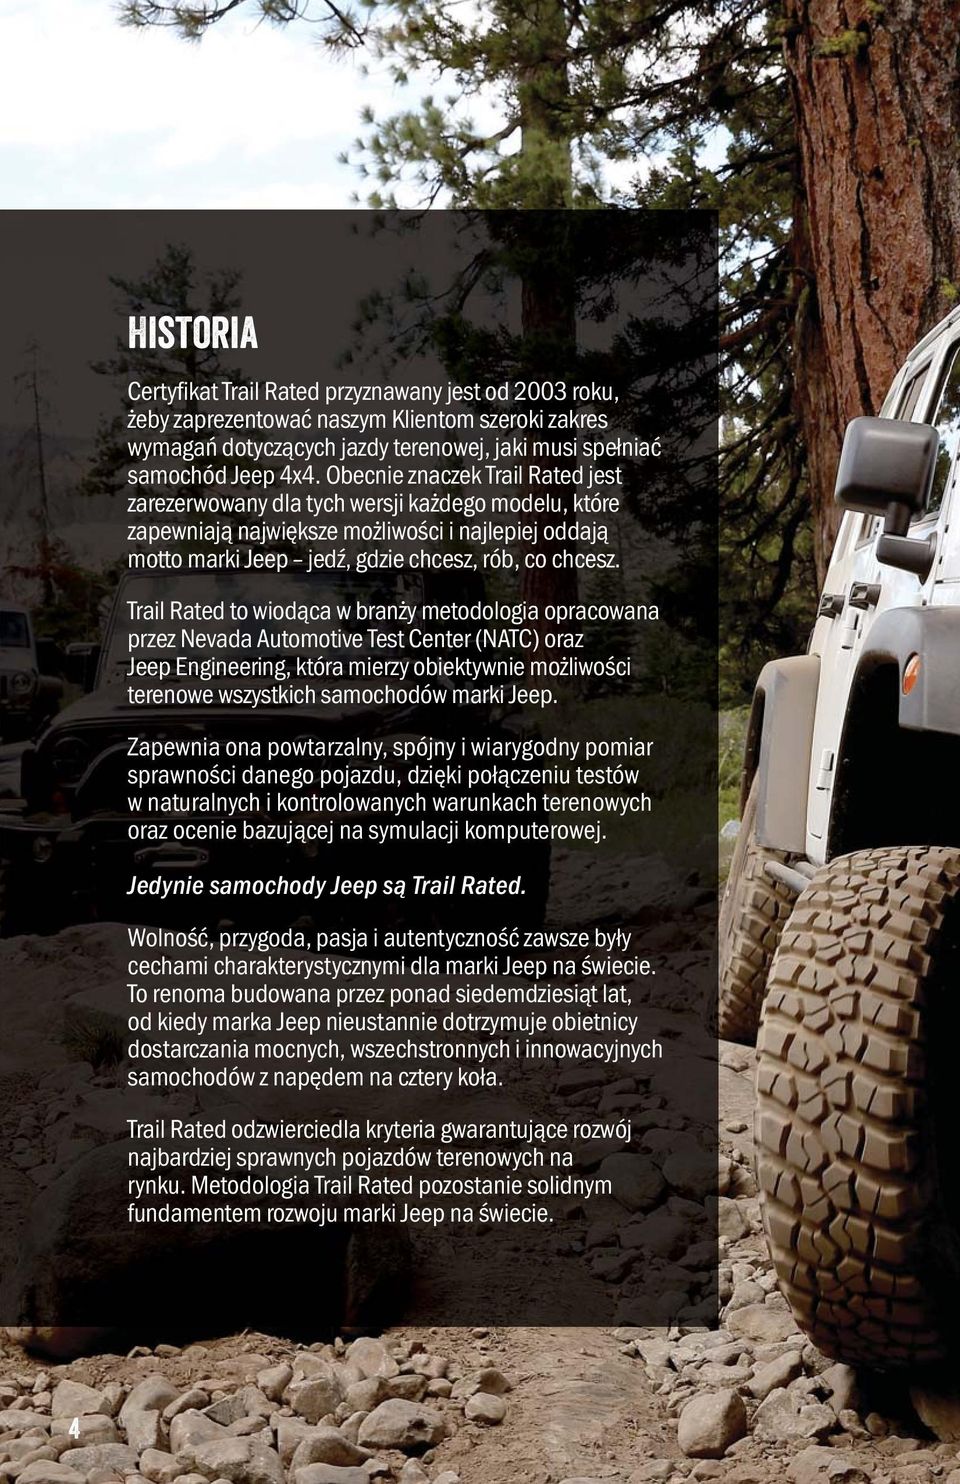 Trail Rated to wiodąca w branży metodologia opracowana przez Nevada Automotive Test Center (NATC) oraz Jeep Engineering, która mierzy obiektywnie możliwości terenowe wszystkich samochodów marki Jeep.